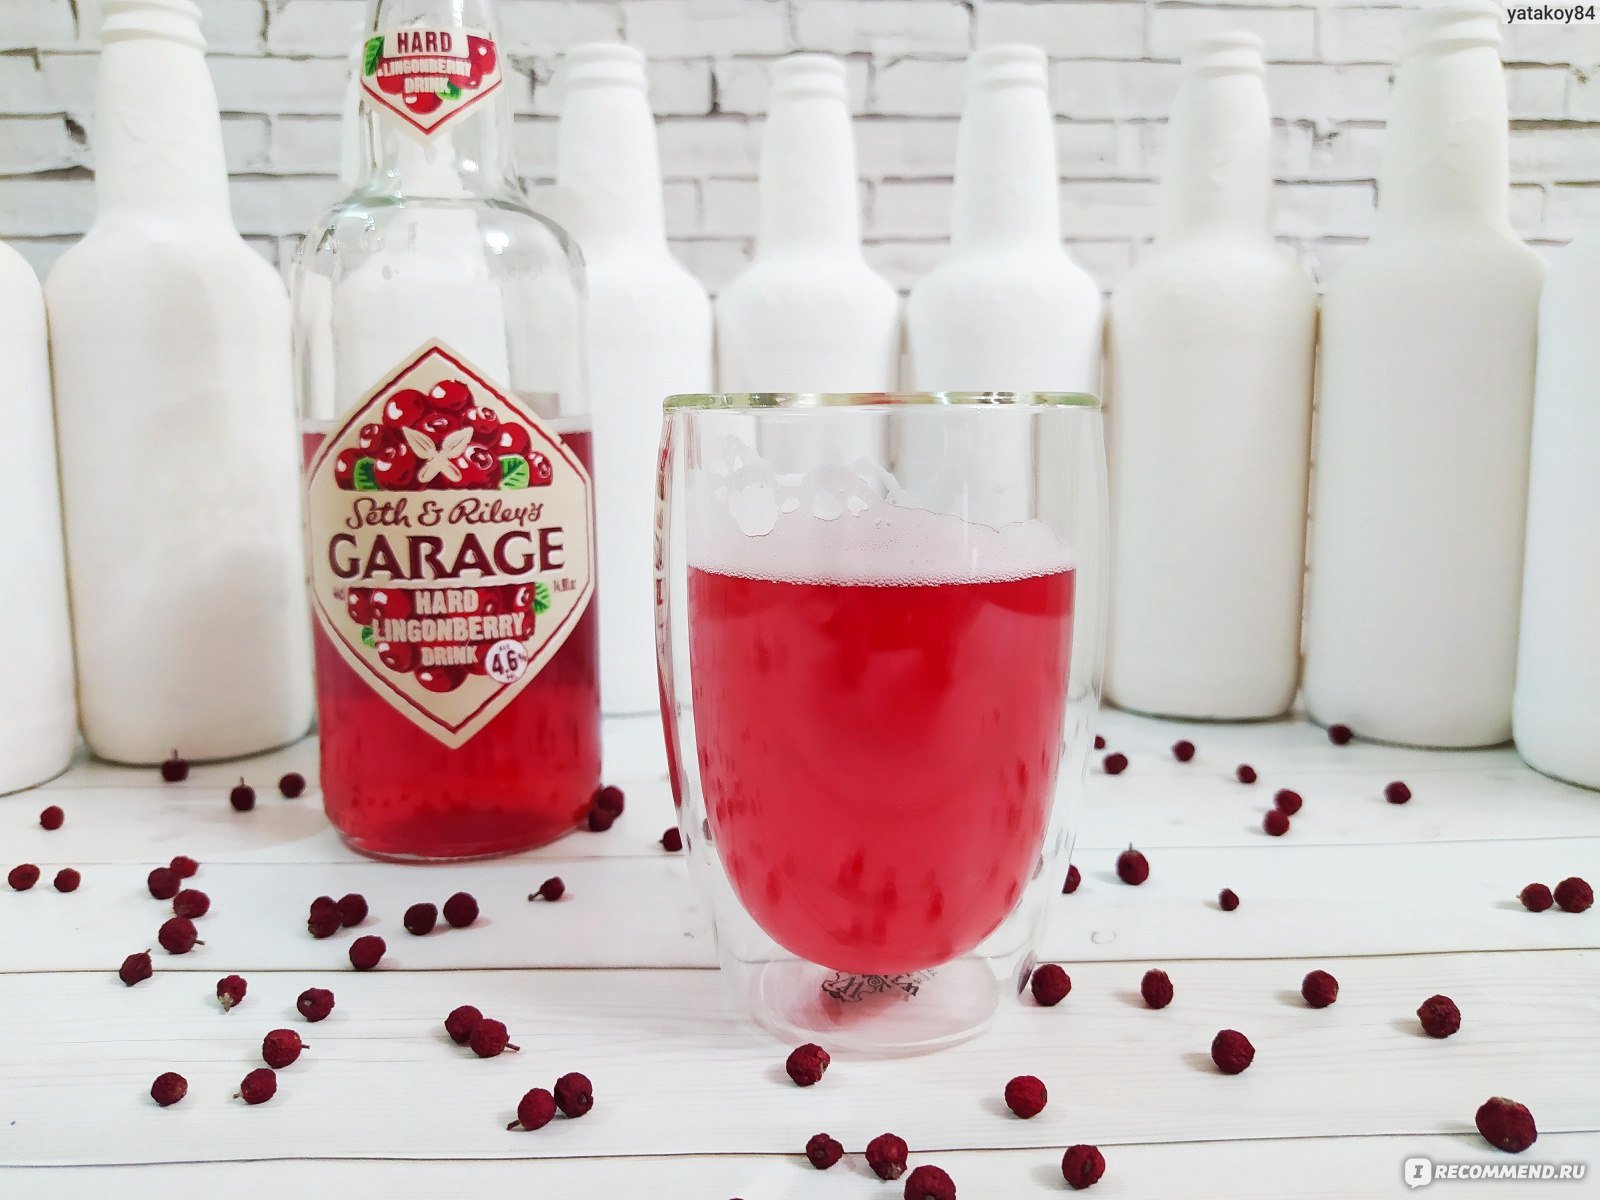 Garage hard Lingonberry Drink